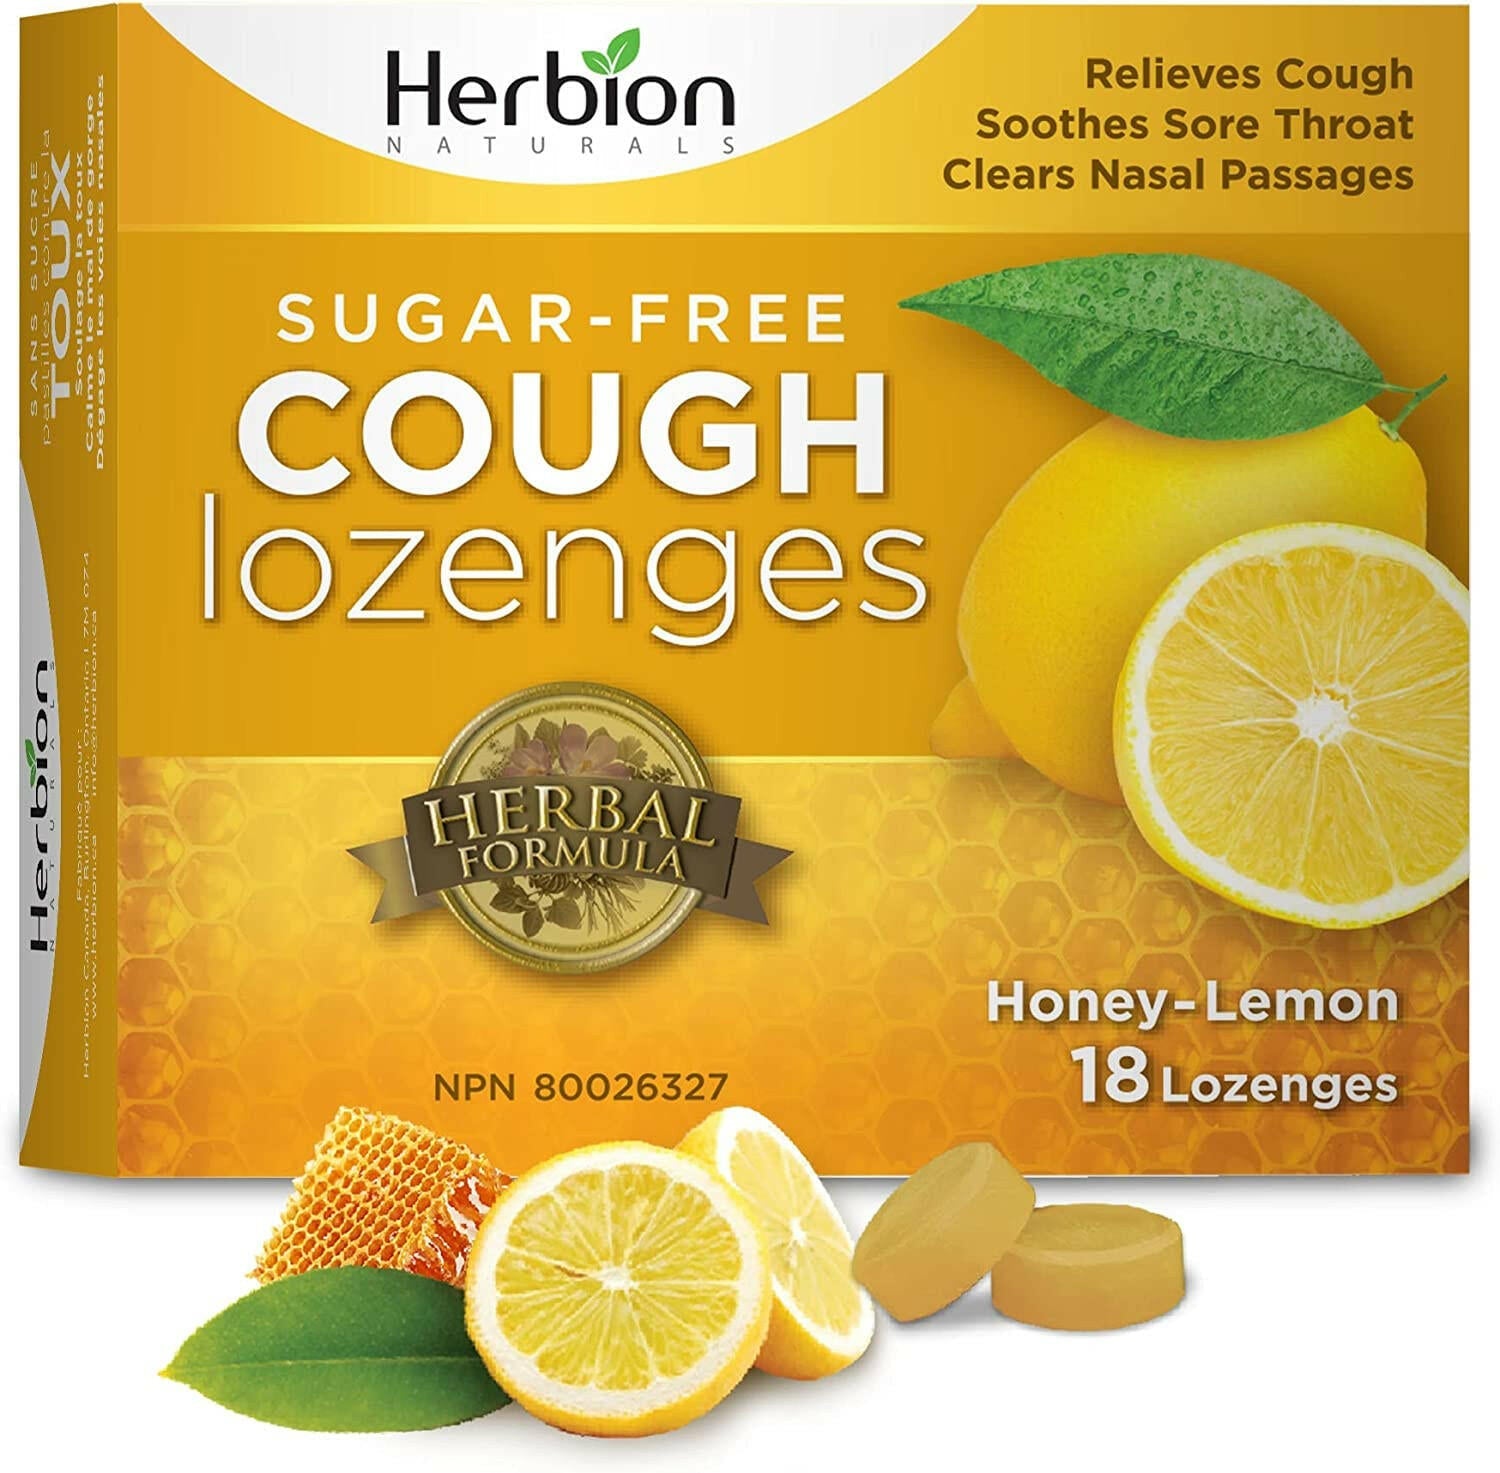 Herbion Honey Lemon Cough Lozenges - blister pack (18's)